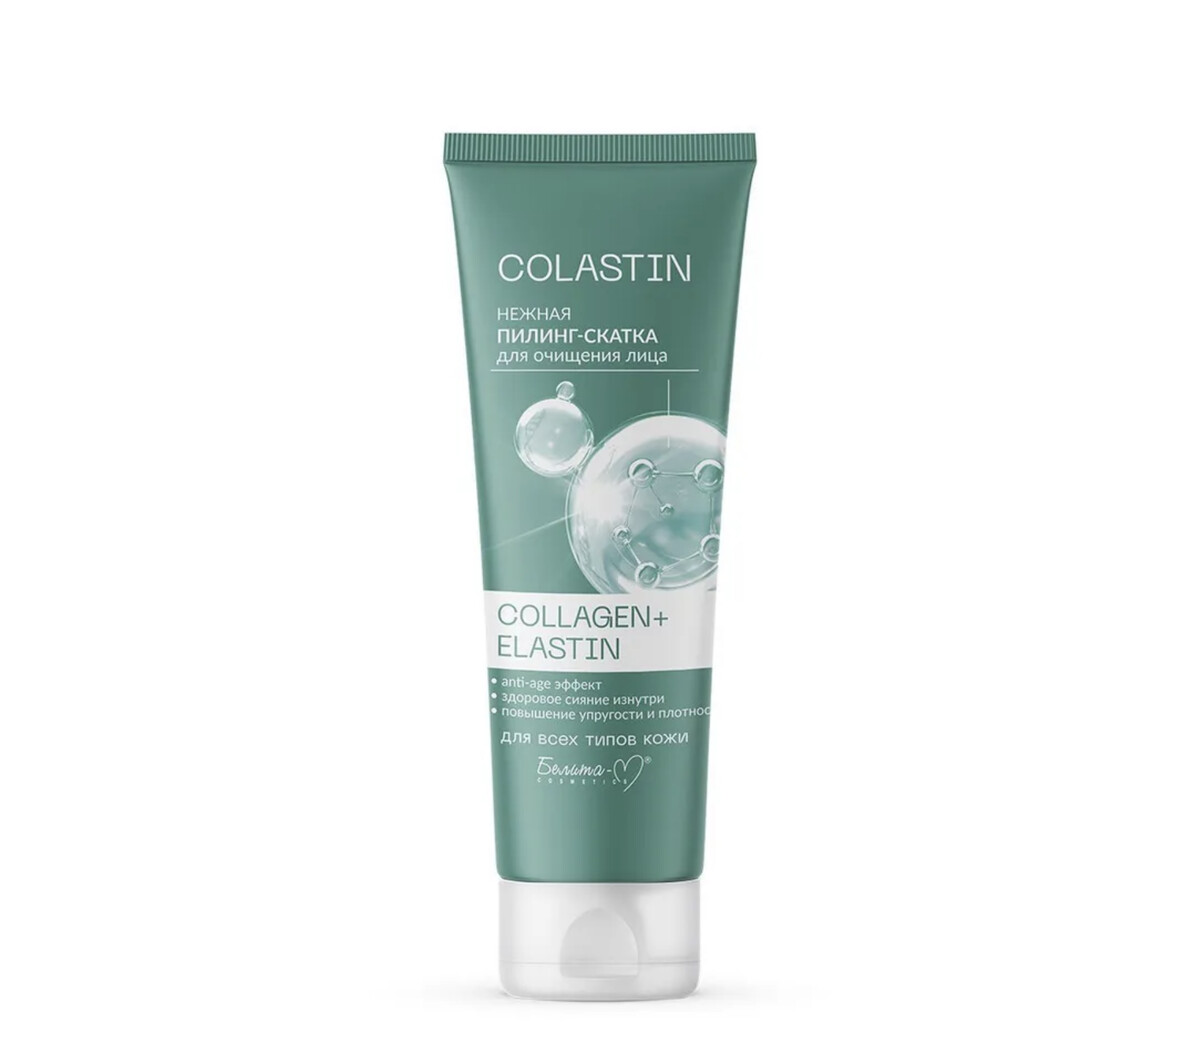 Colastin пилинг-скатка для очищения лица нежная collagen+elastin 75г пилинг скатка для лица 75 мл